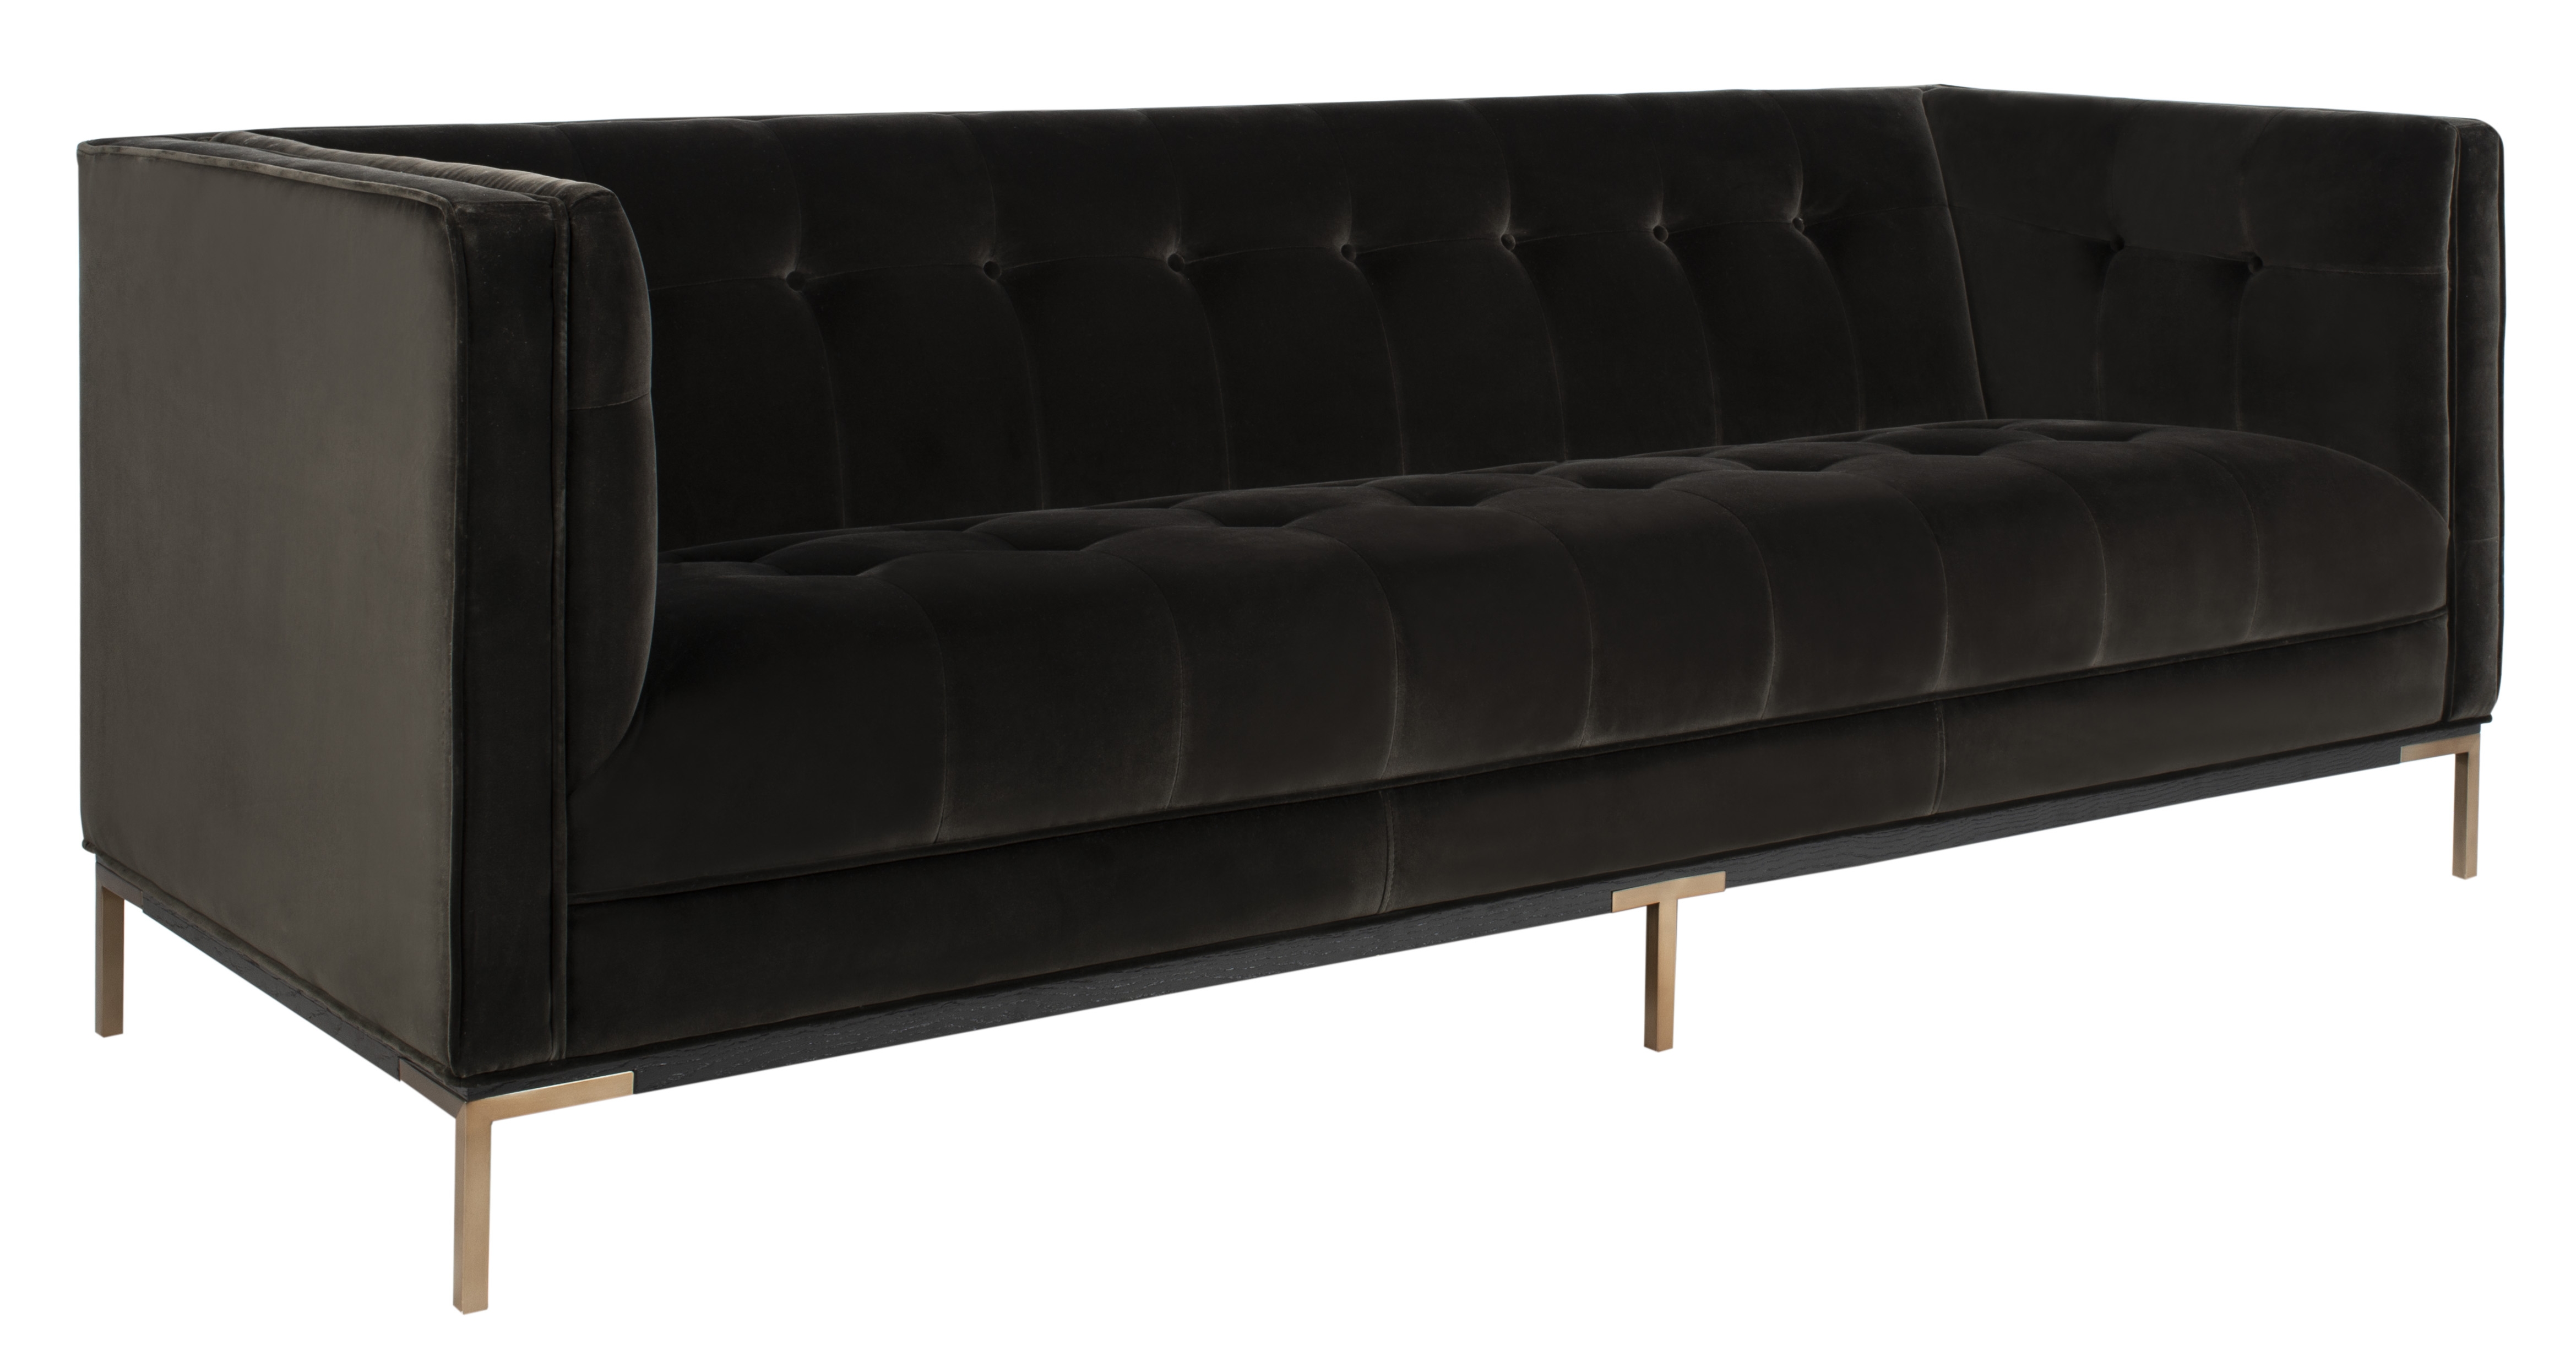 Sienne Tufted Velvet Sofa - Shale - Arlo Home - Image 1